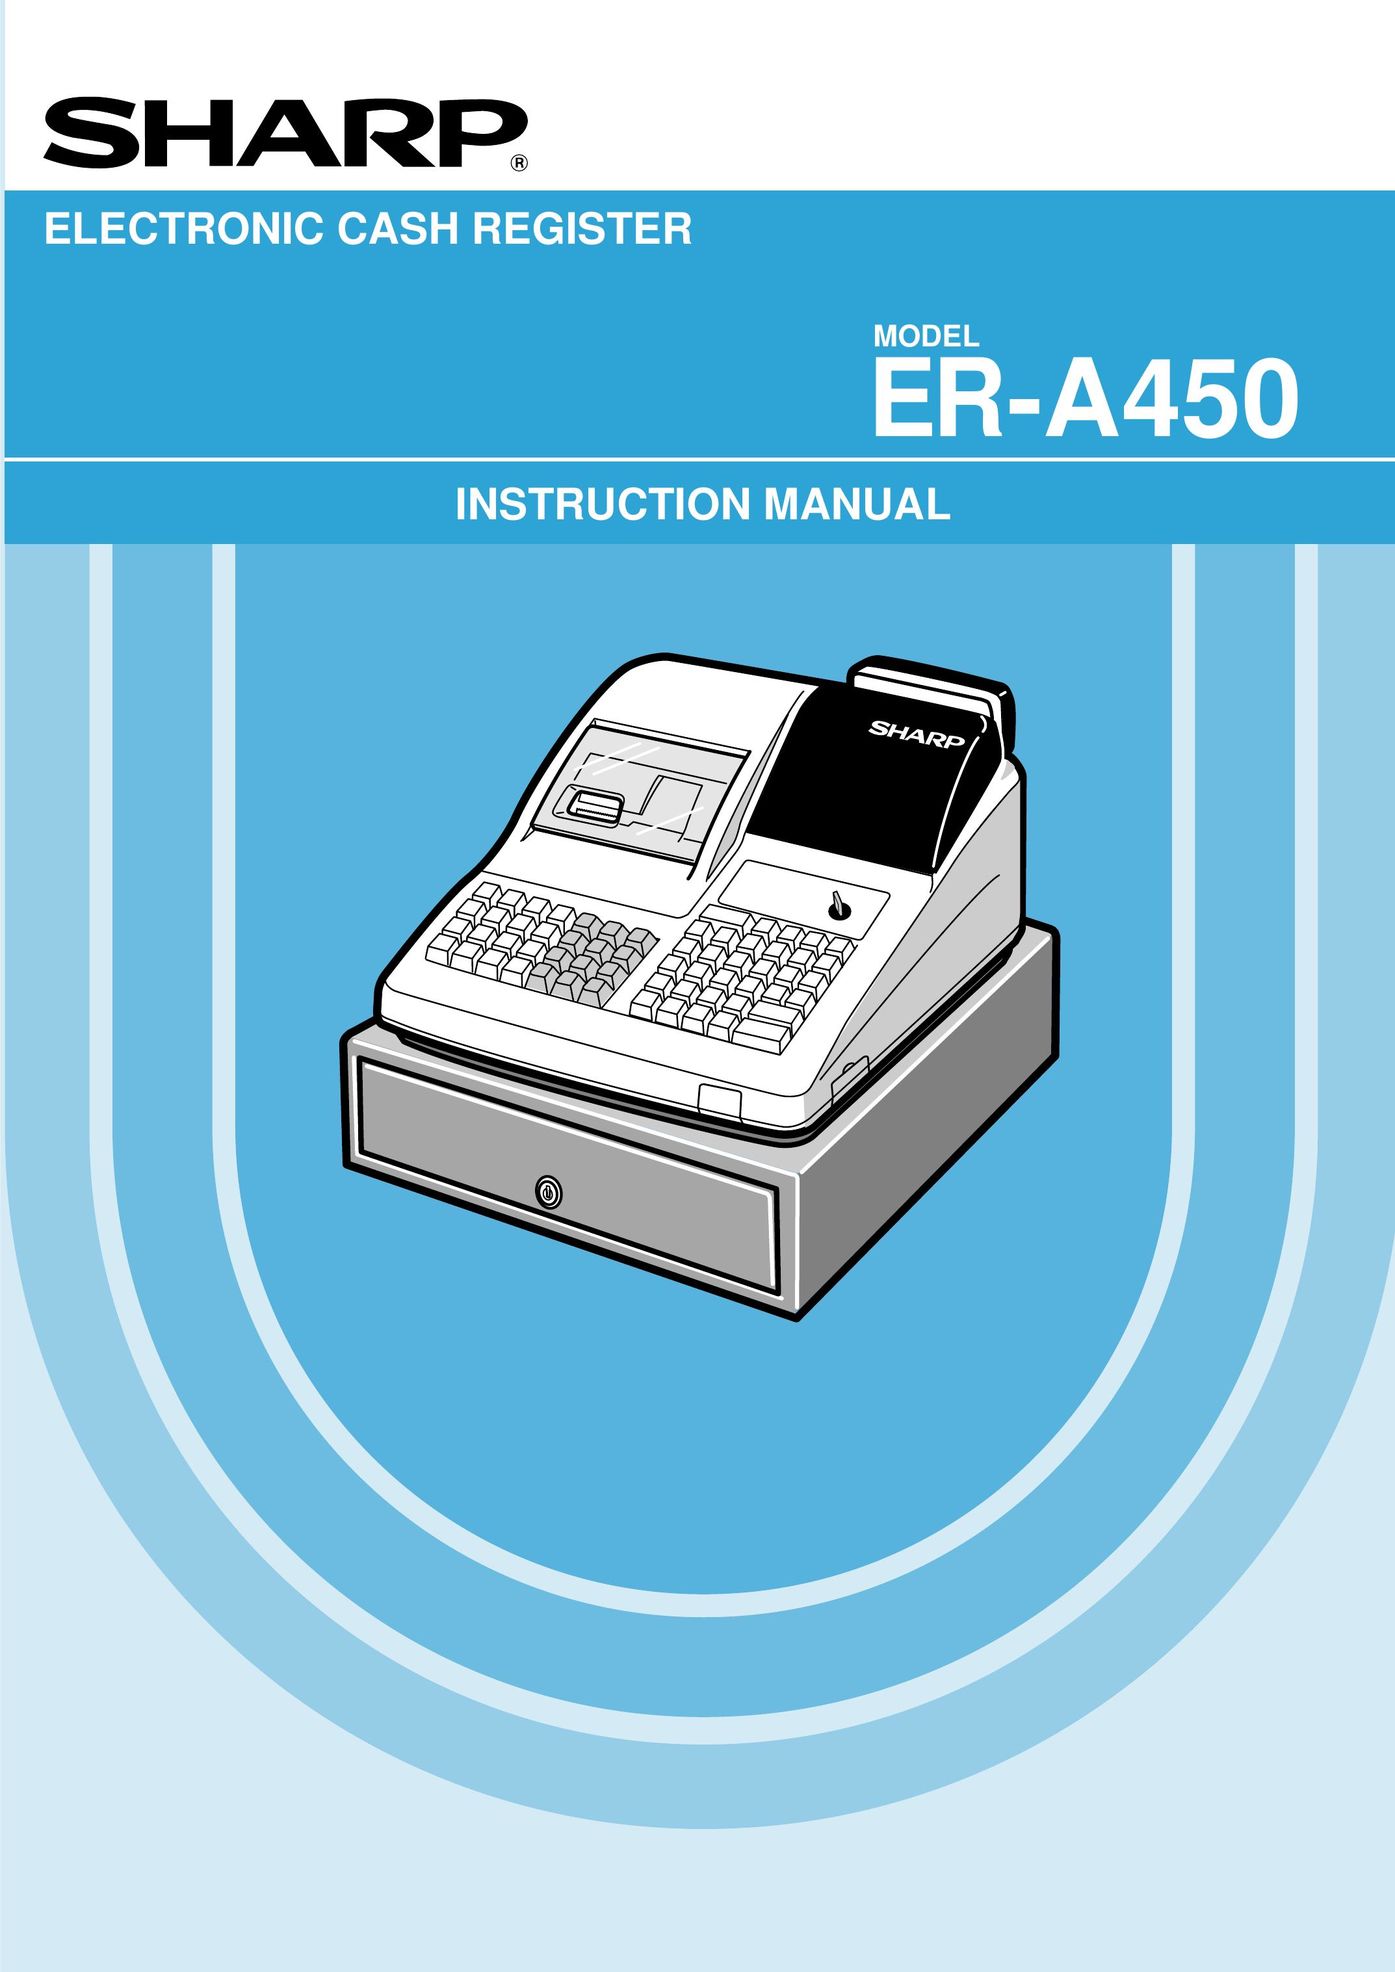 Sharp ER-A450 Cash Register User Manual